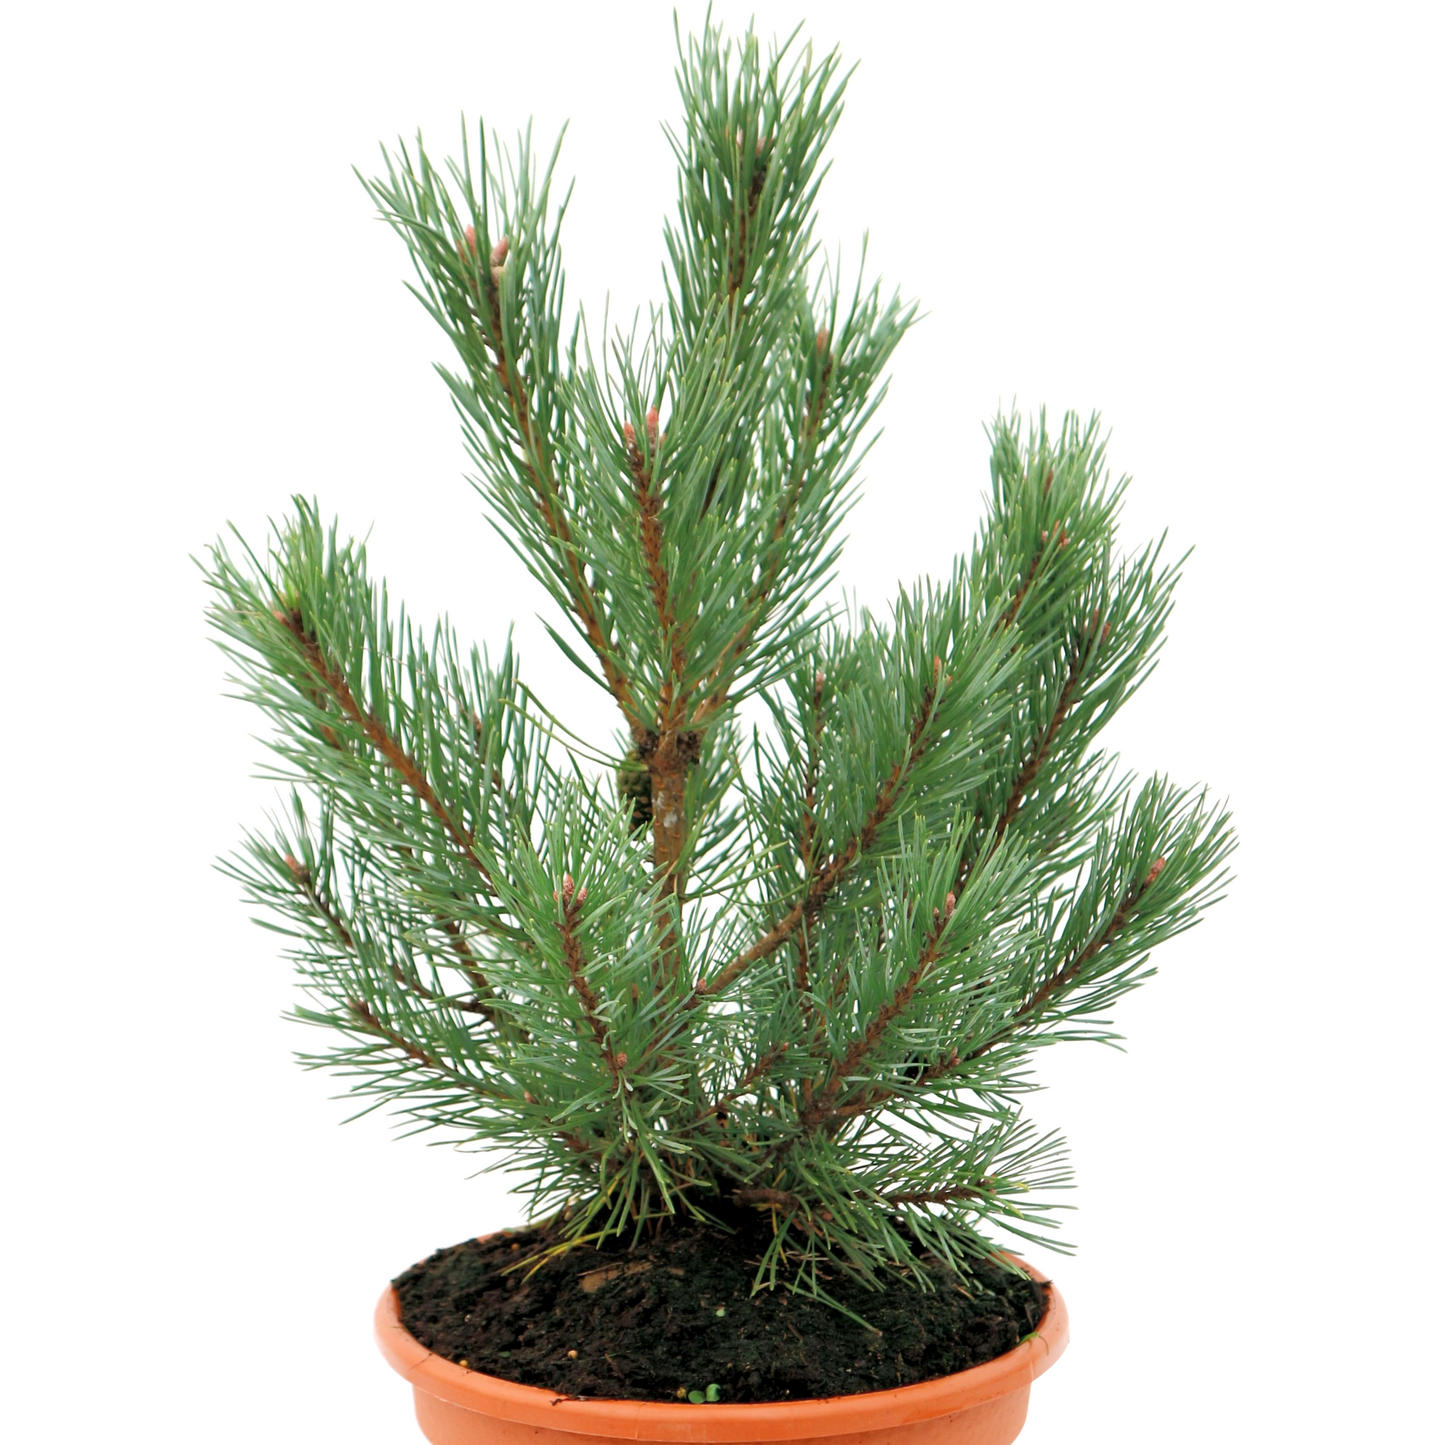 Pinus Sylvestris "Watereri" - Dwarf pine 